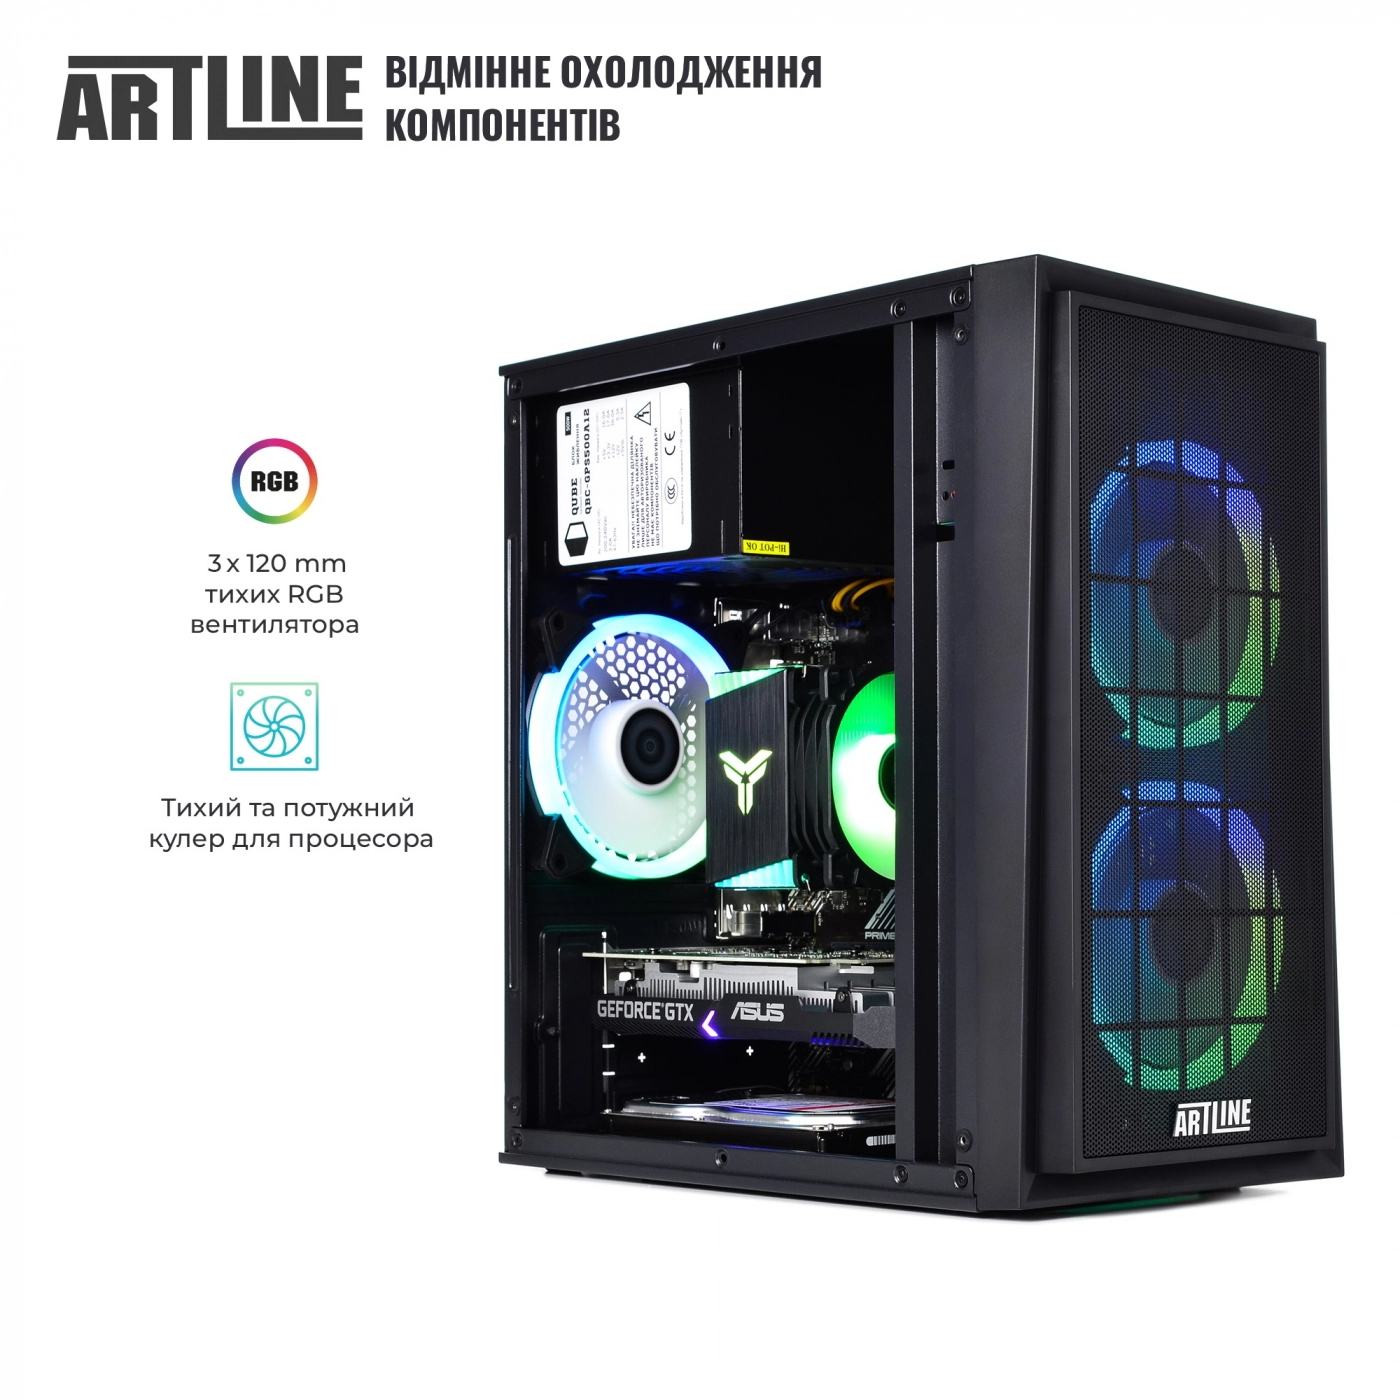 Купить Компьютер ARTLINE Gaming X43v25 - фото 2